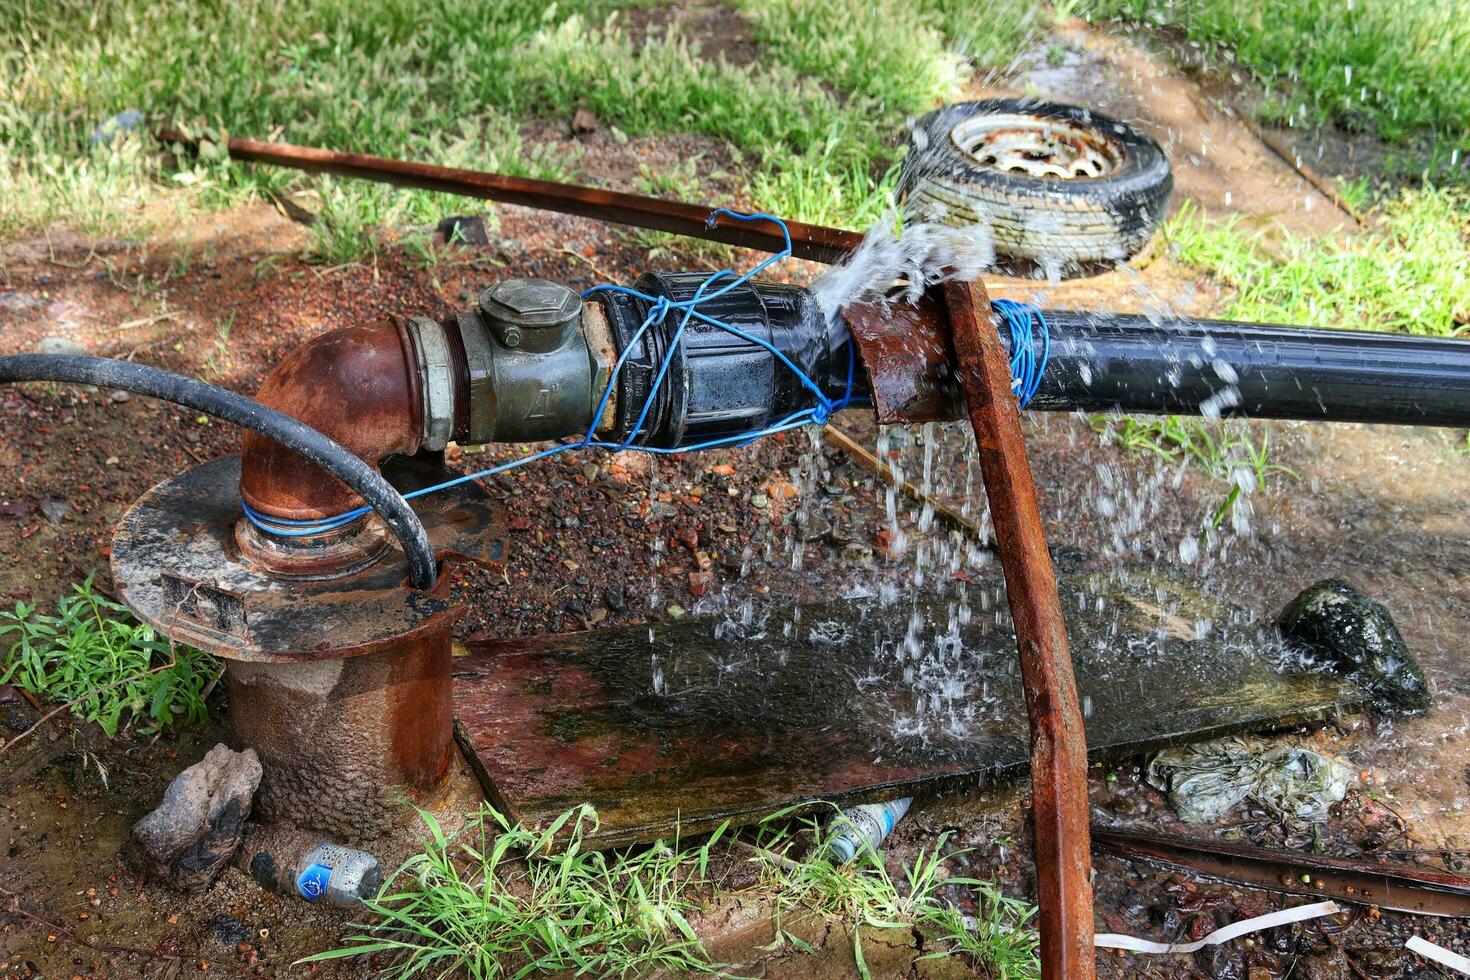 acqua perdita a partire dal il acqua tubo nel il giardino, perdita di disattivo pvc comune foto